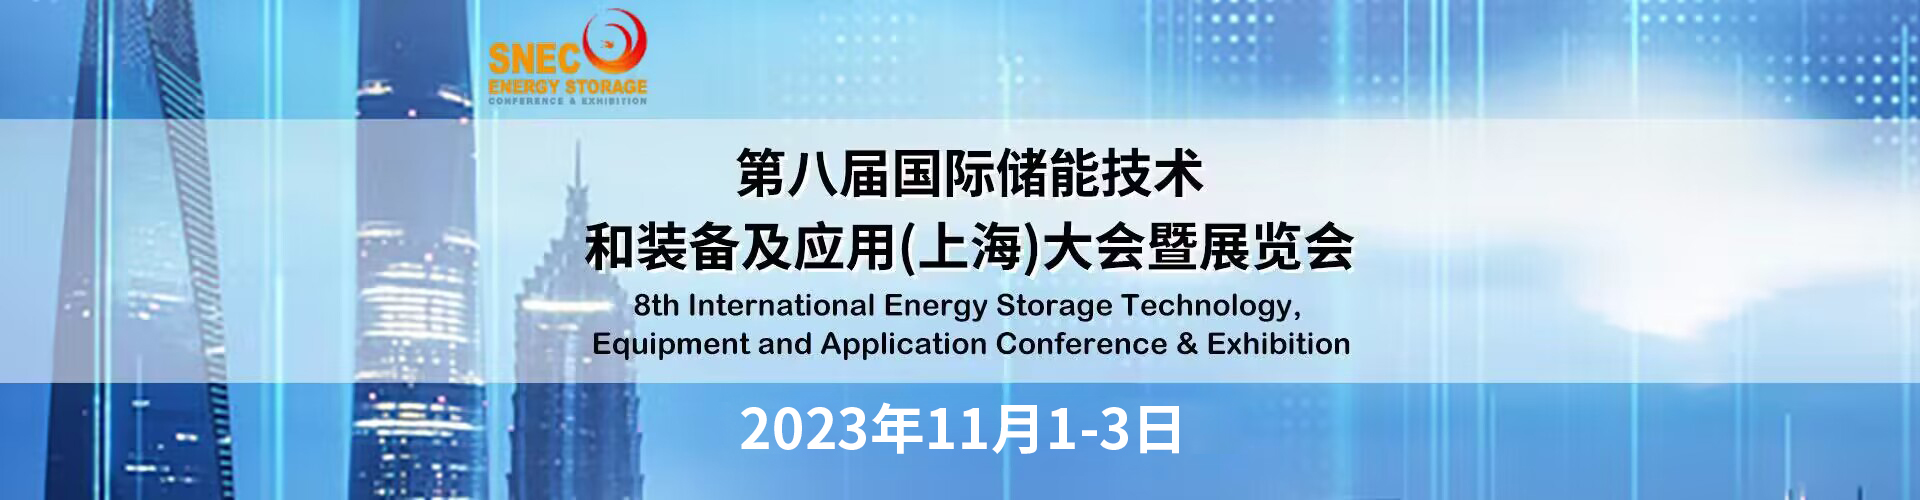  2023年上海储能展-SNEC第八届(2023)国际储能技术和装备及应用(上海)大会暨展览会